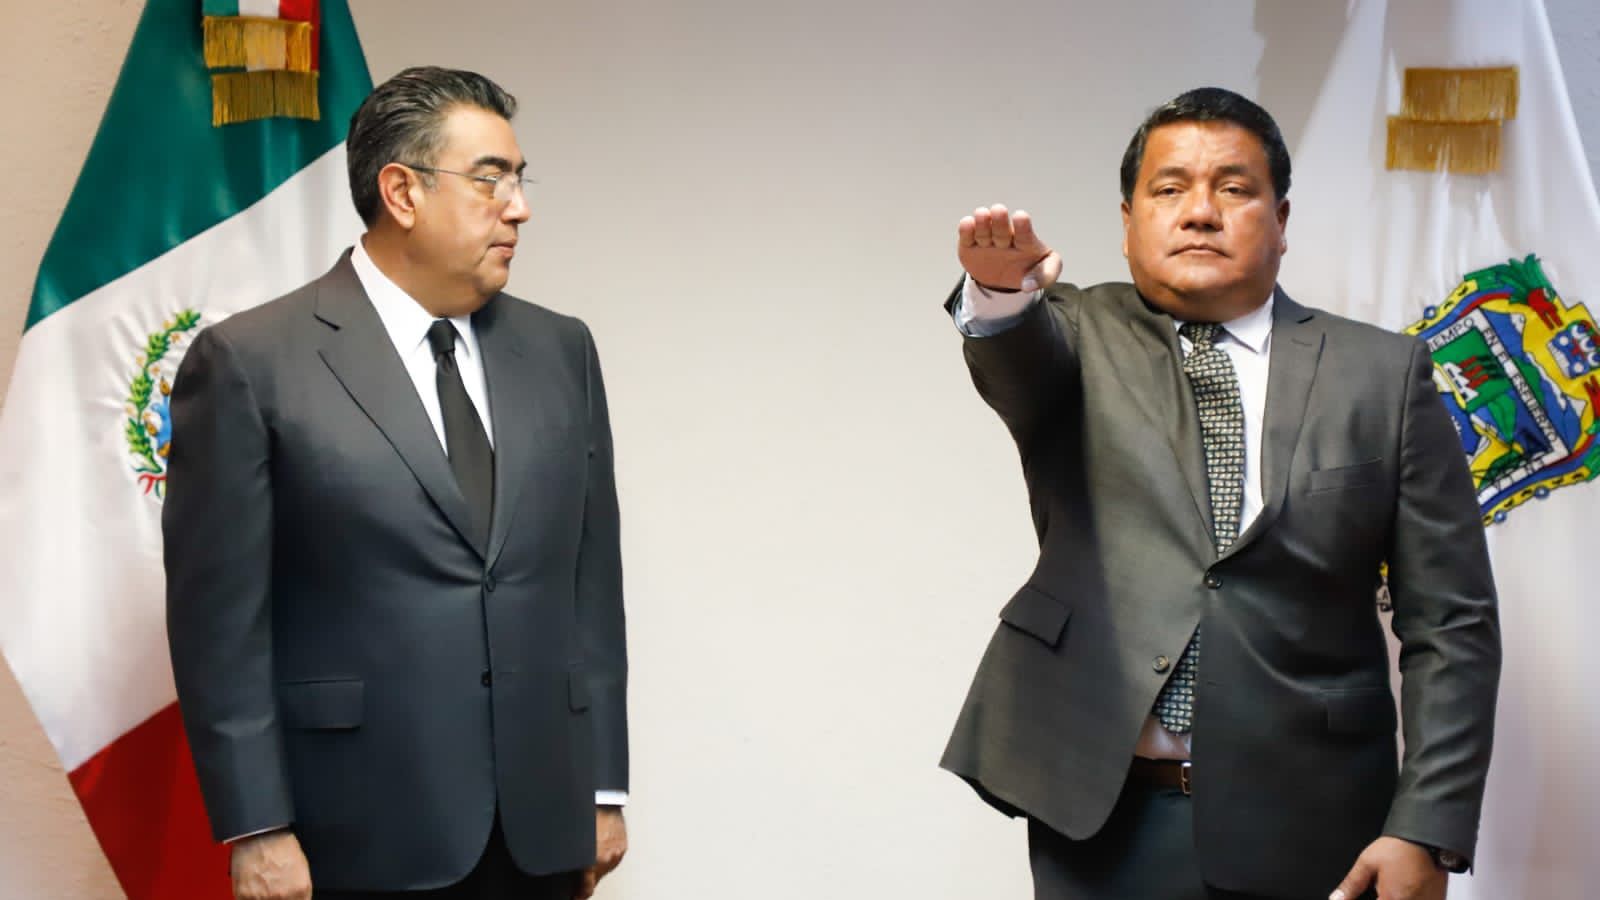 Julio Huerta Gómez Secretaría de Gobernación Puebla